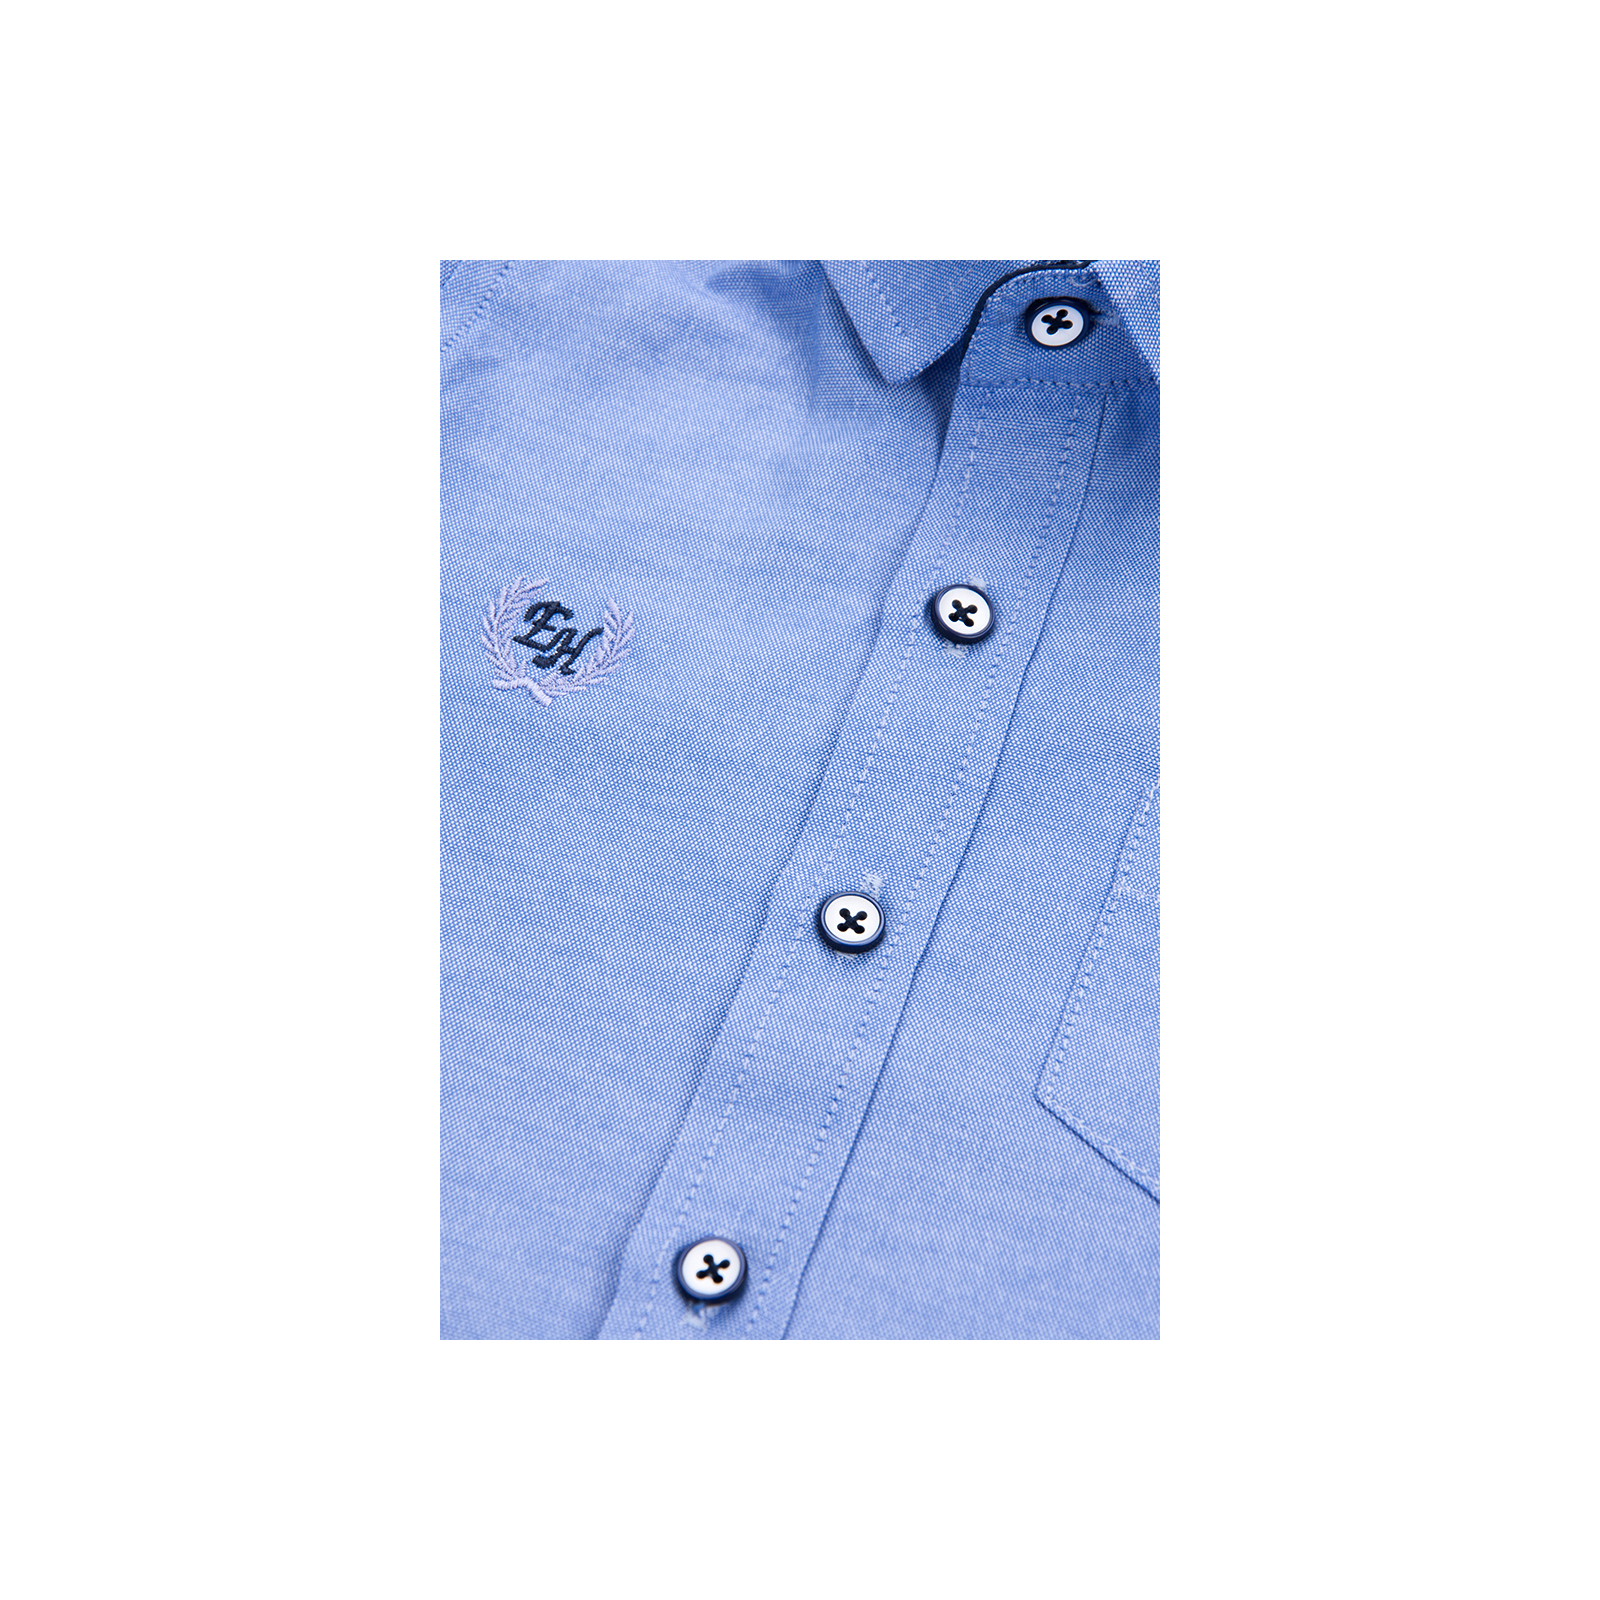 Рубашка Breeze голубая (G-218-98B-blue) изображение 3